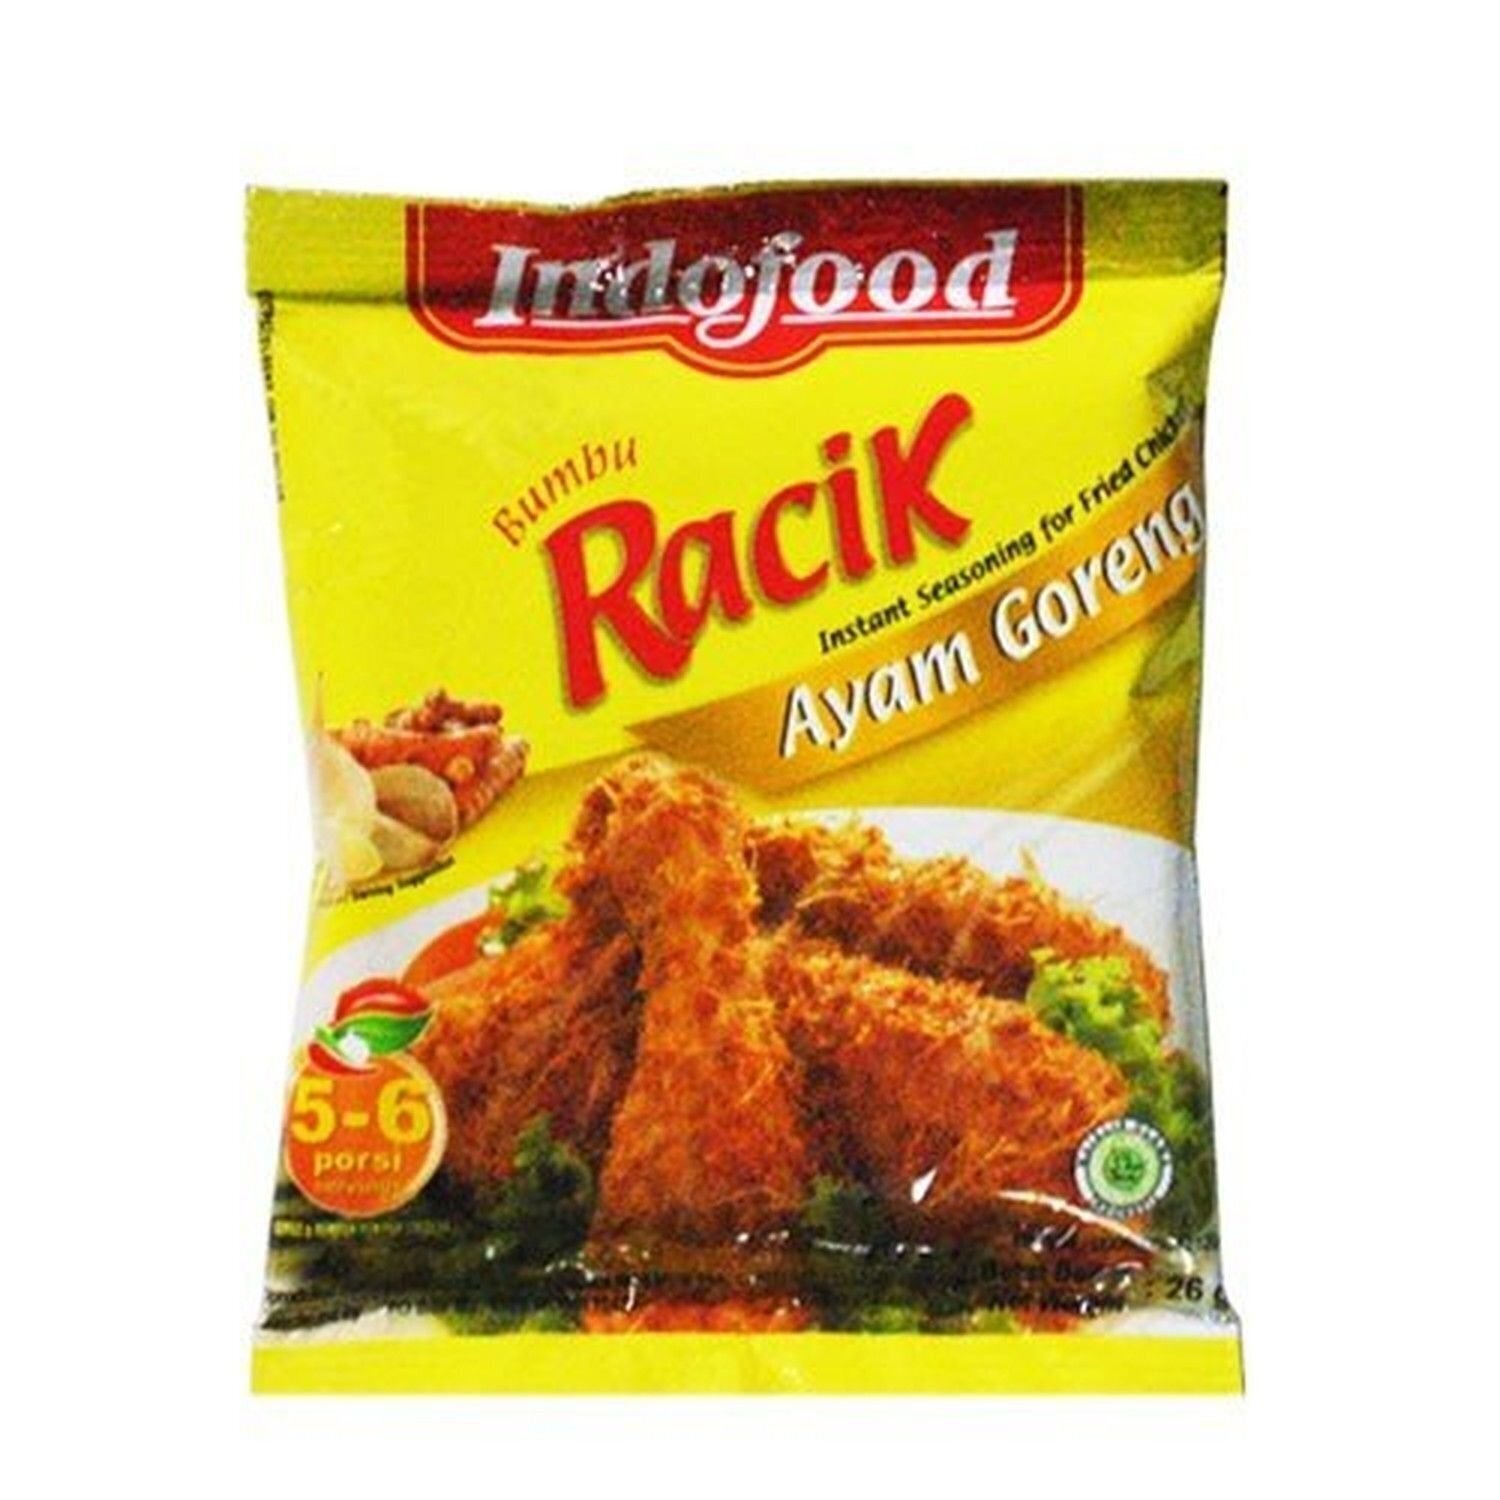 Indofood Racik - AYAM GORENG 26 grams